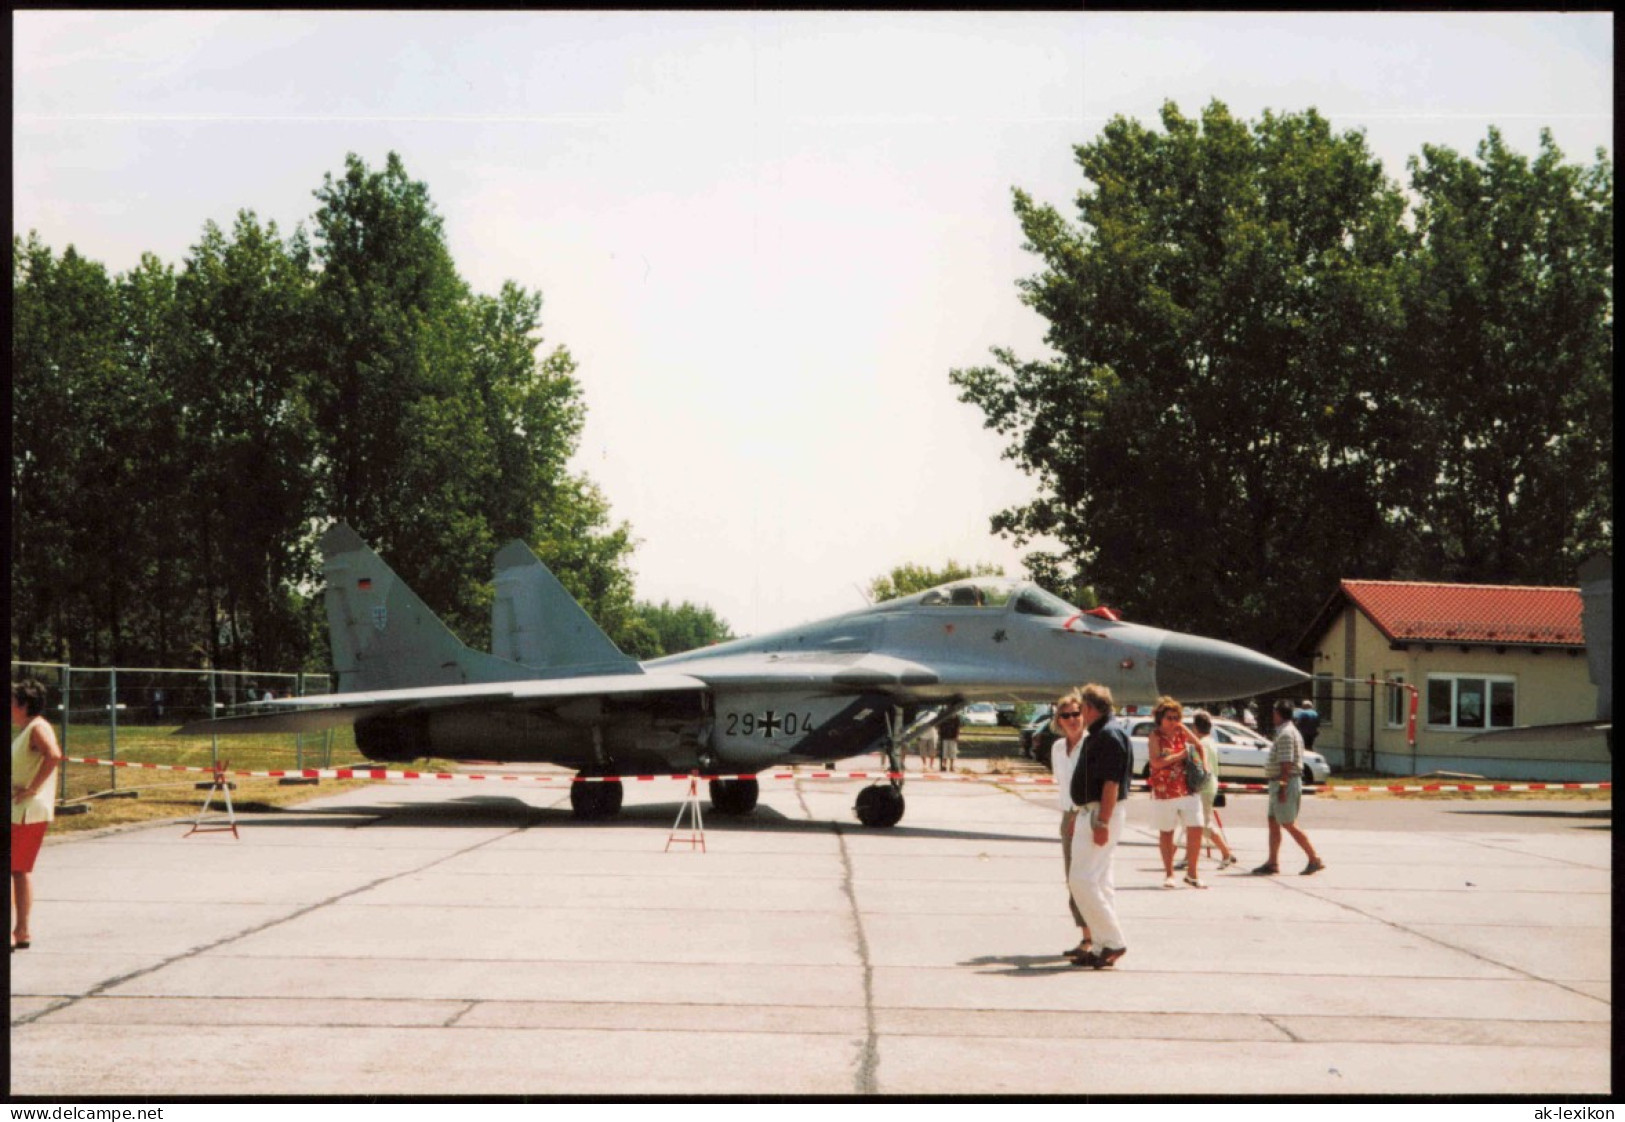 Kampfjet Vom Typ MiG-29 Bundeswehr Flugzeug 1980 Privatfoto - Material